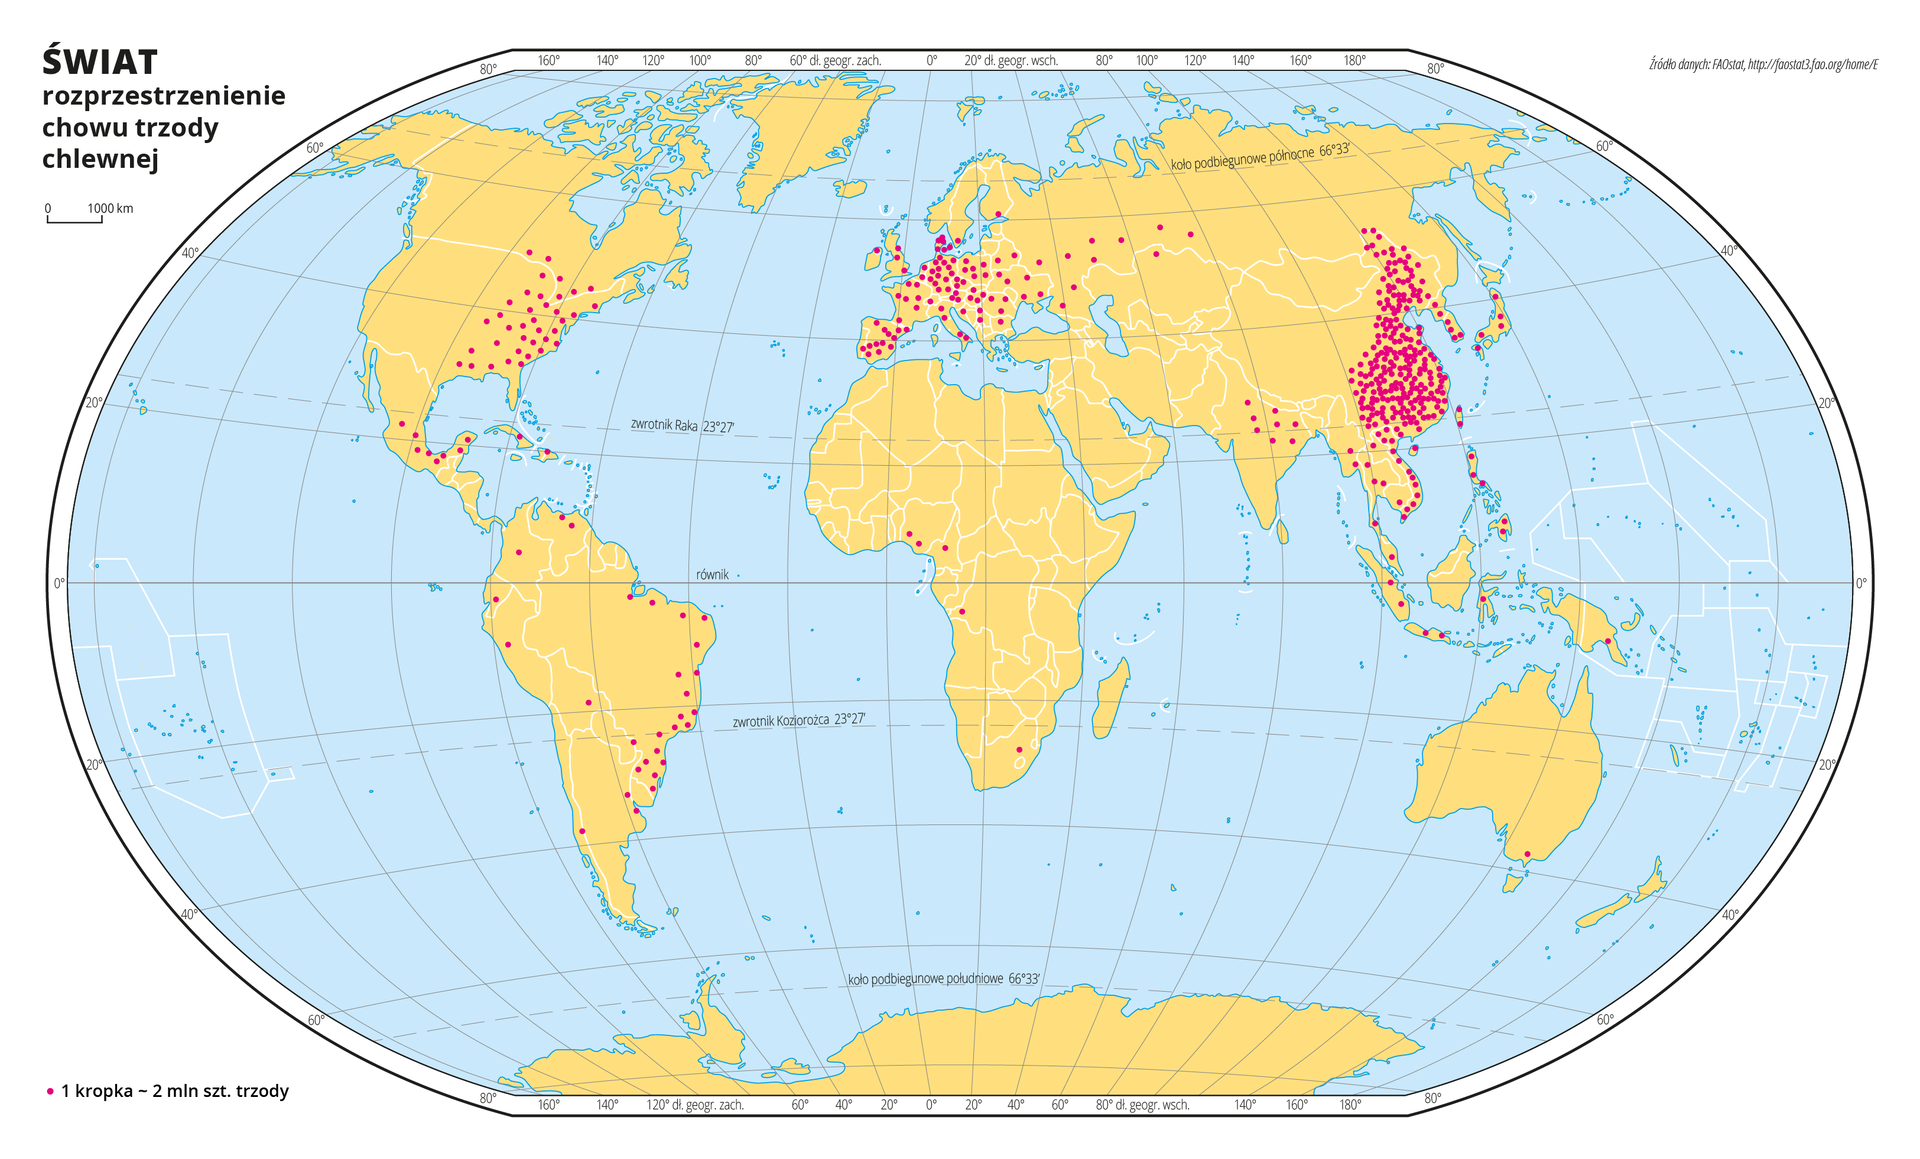 Ilustracja przedstawia mapę świata. Wody zaznaczono kolorem niebieskim. Na mapie za pomocą czerwonych kropek przedstawiono rozprzestrzenienie chowu trzody chlewnej. Jedna kropka oznacza dwa miliony sztuk trzody chlewnej. Największe zagęszczenie kropek jest we wschodniej części Azji, dużo mniejsze zagęszczenie kropek jest we wschodniej części Ameryki Północnej i Ameryki Południowej oraz w Europie.Mapa pokryta jest równoleżnikami i południkami. Dookoła mapy w białej ramce opisano współrzędne geograficzne co dwadzieścia stopni.Po lewej stronie mapy objaśniono znak kropki użyty na mapie.